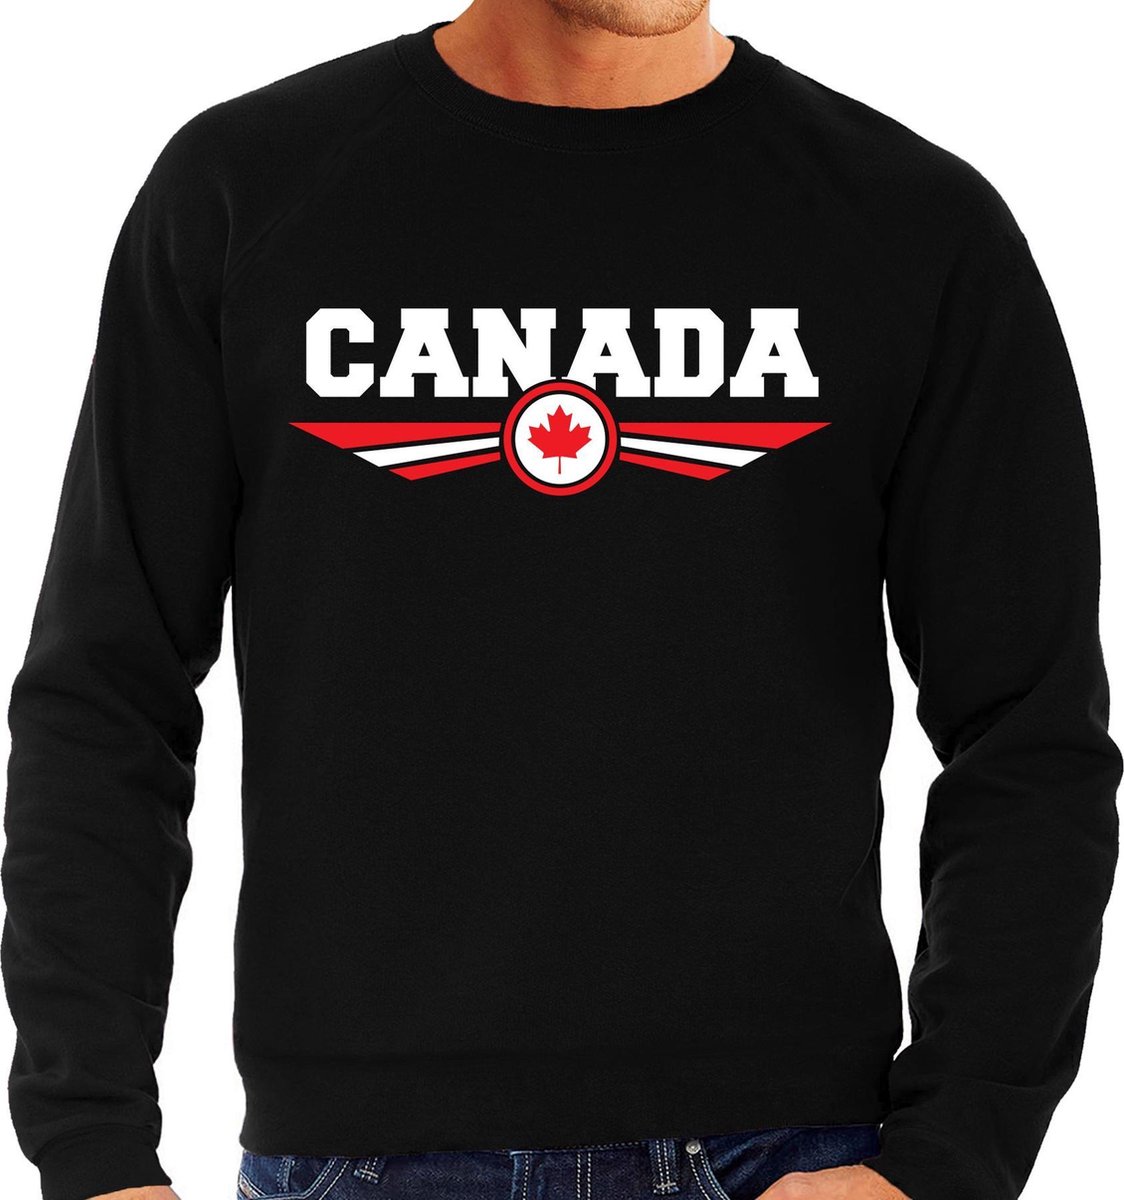 Canada landen sweater / trui zwart heren S